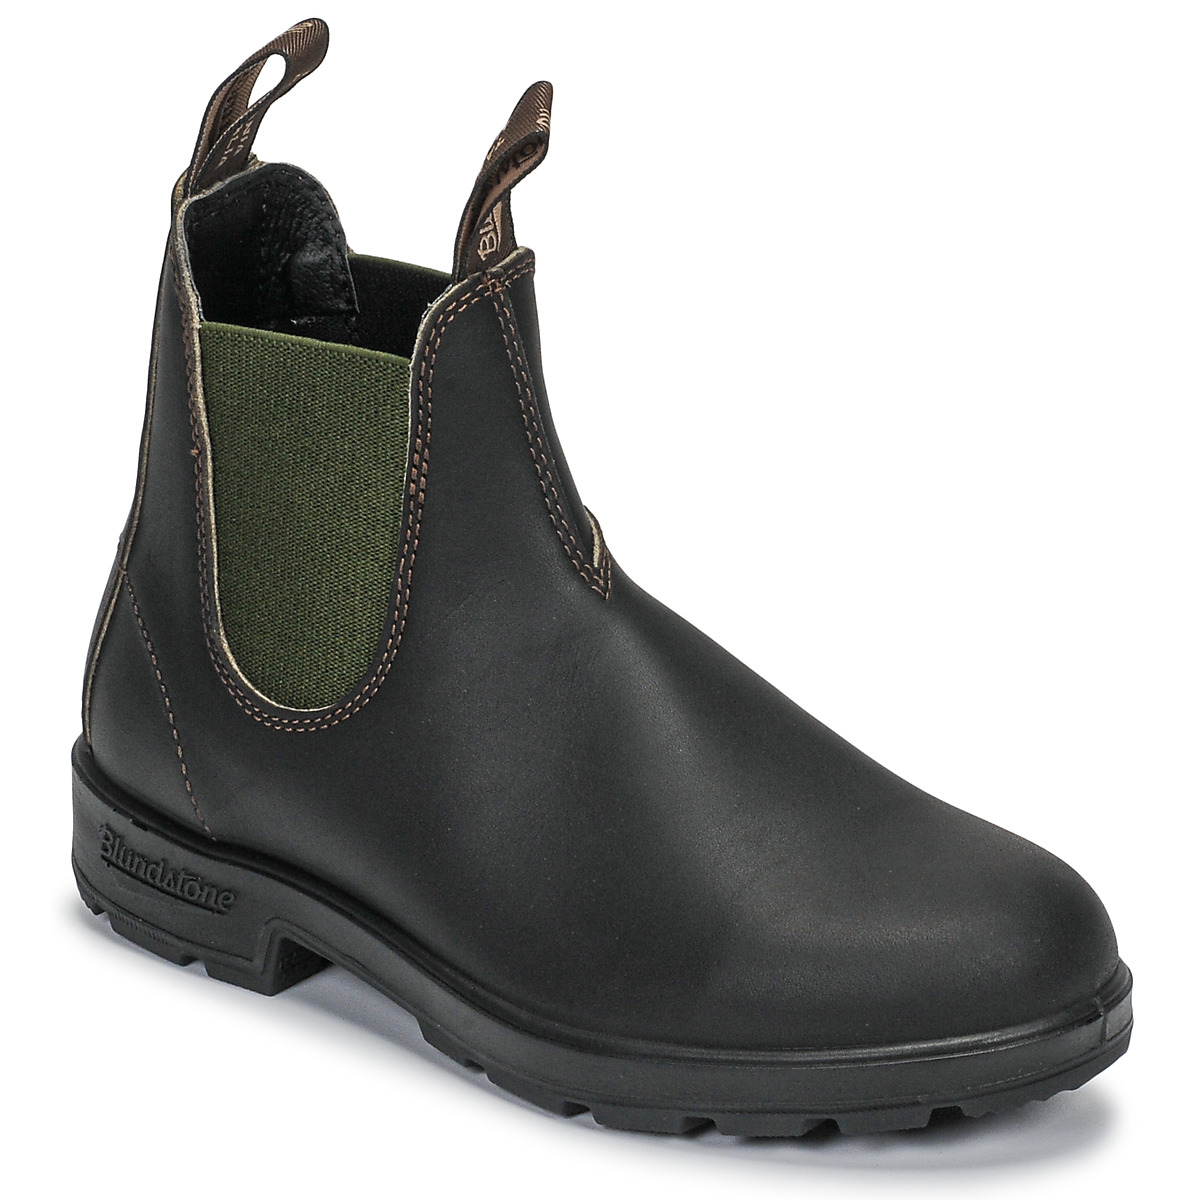 Chaussures israfil Boots Blundstone ORIGINAL CHELSEA israfil BOOTS 519 Marron / Kaki